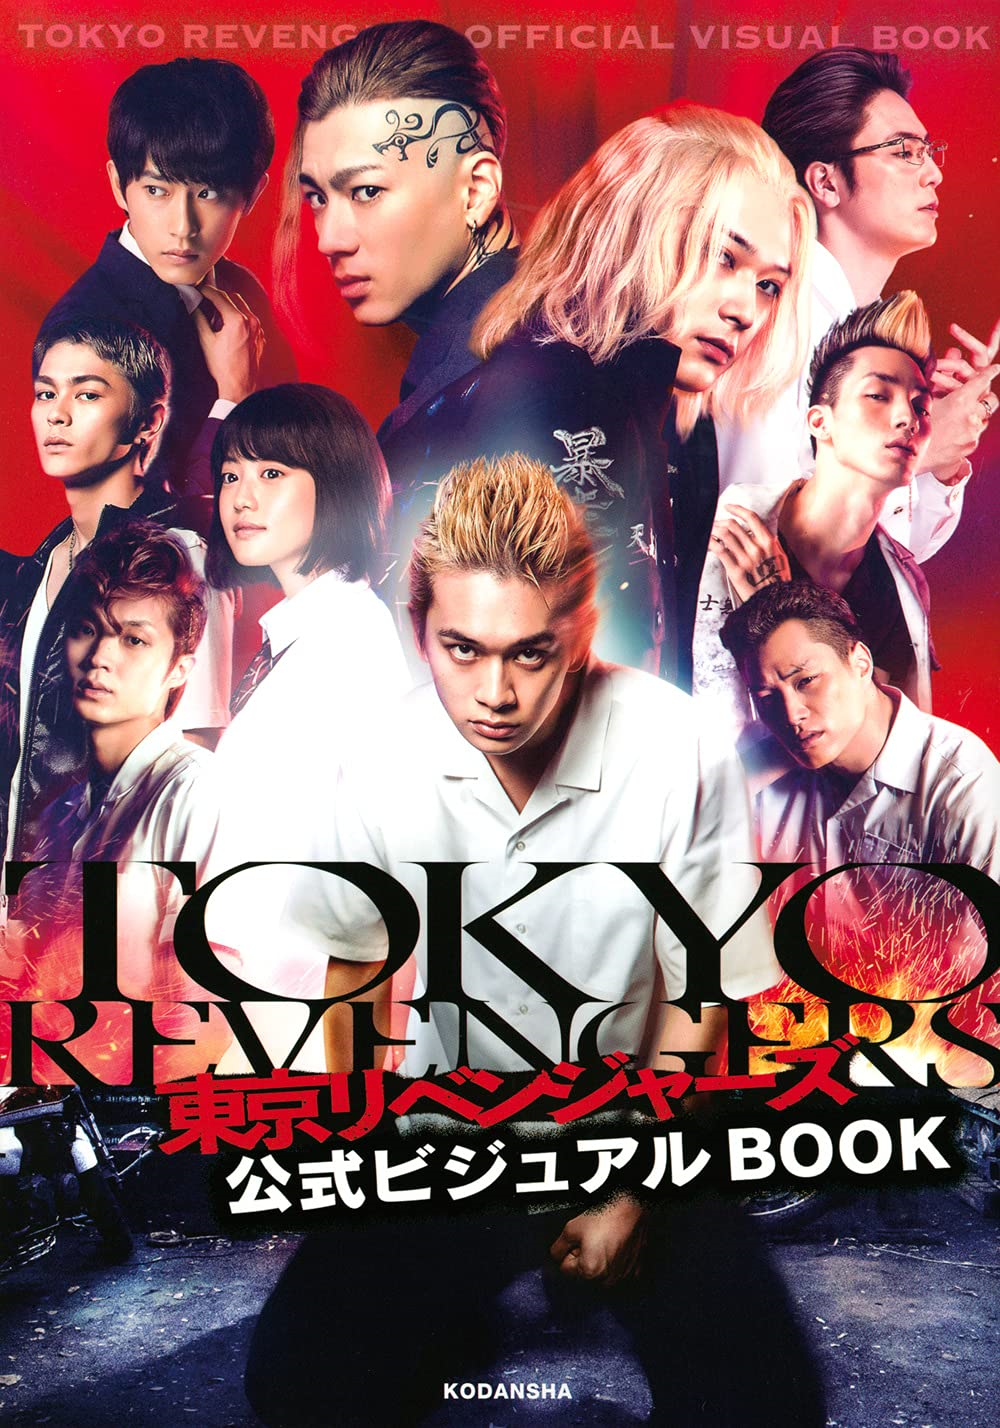 Tokyo Revengers (Live Action Movie), Tokyo Revengers Wiki